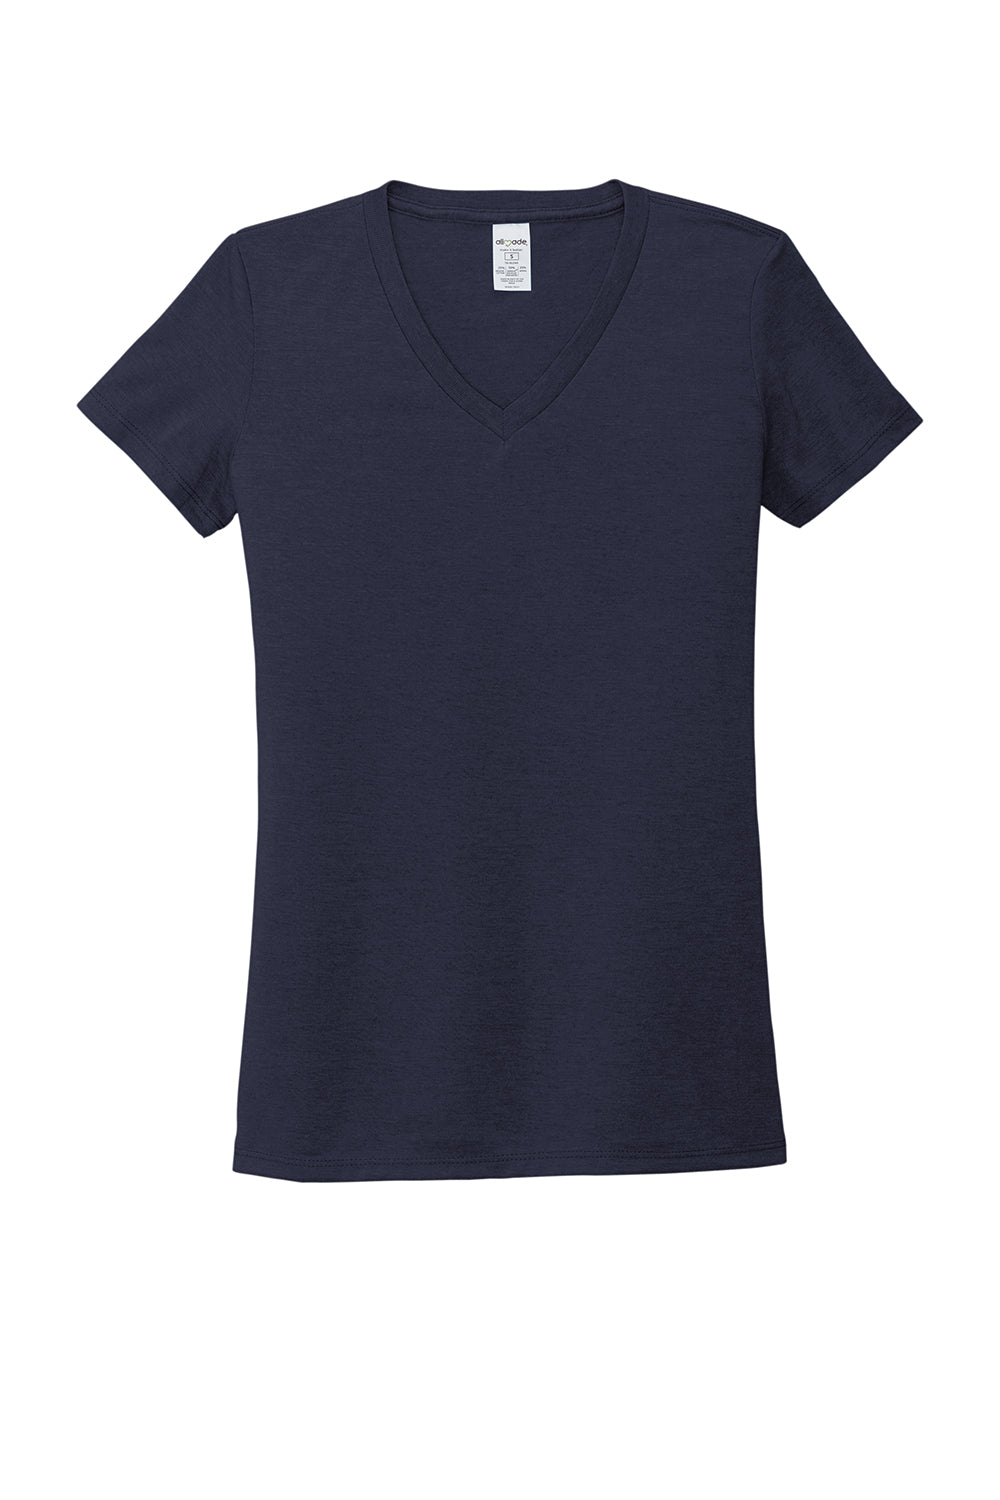 Allmade AL2018 Womens Short Sleeve V-Neck T-Shirt Night Sky Navy Blue Flat Front